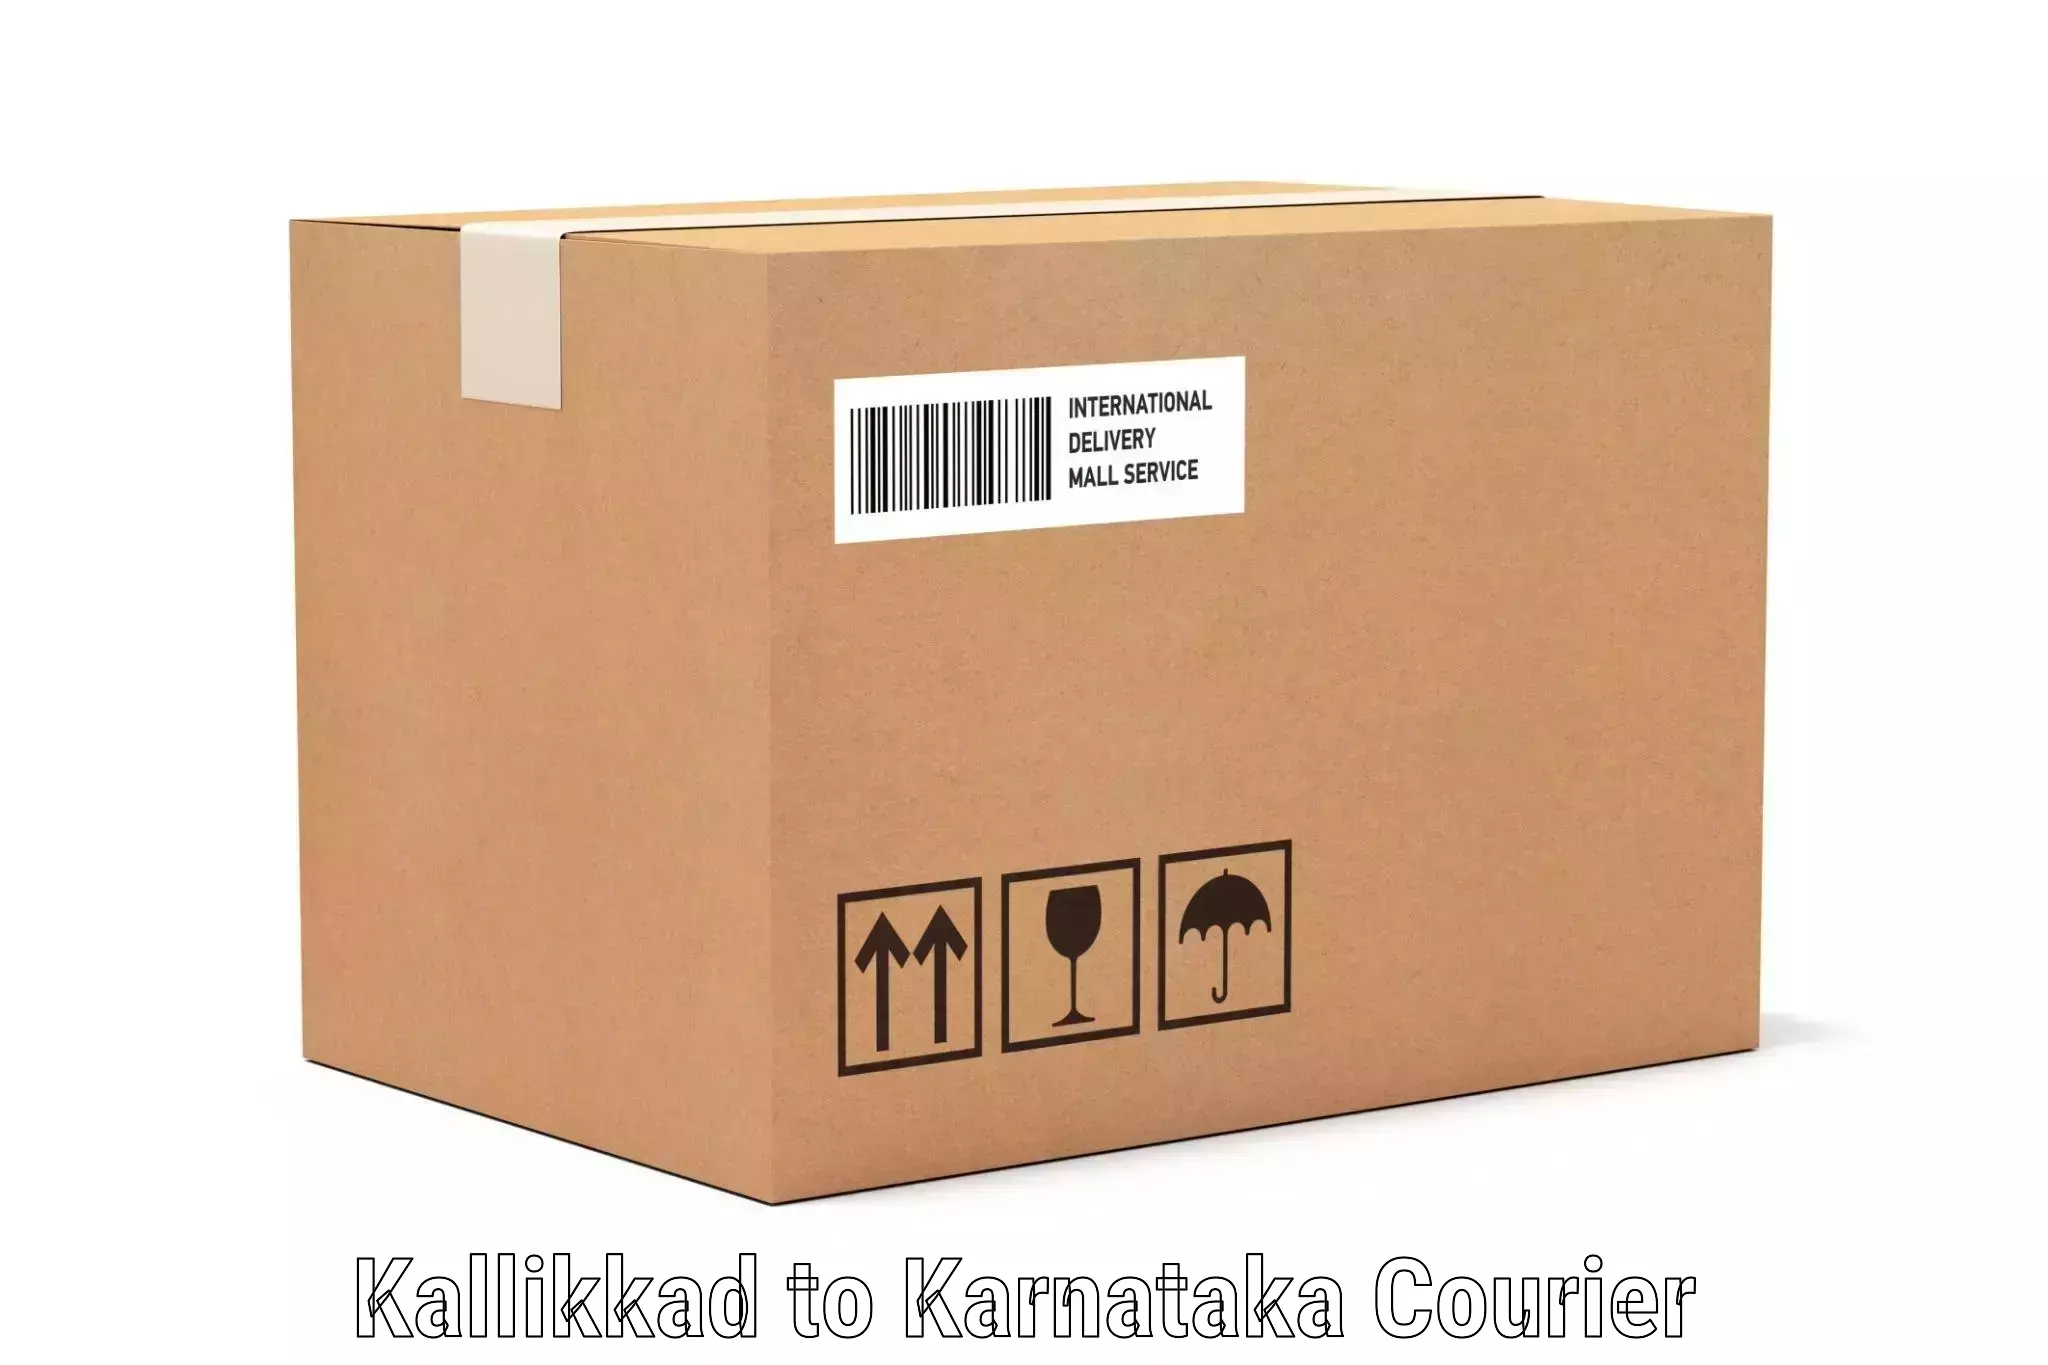 Luggage shipping solutions Kallikkad to Ukkadagatri